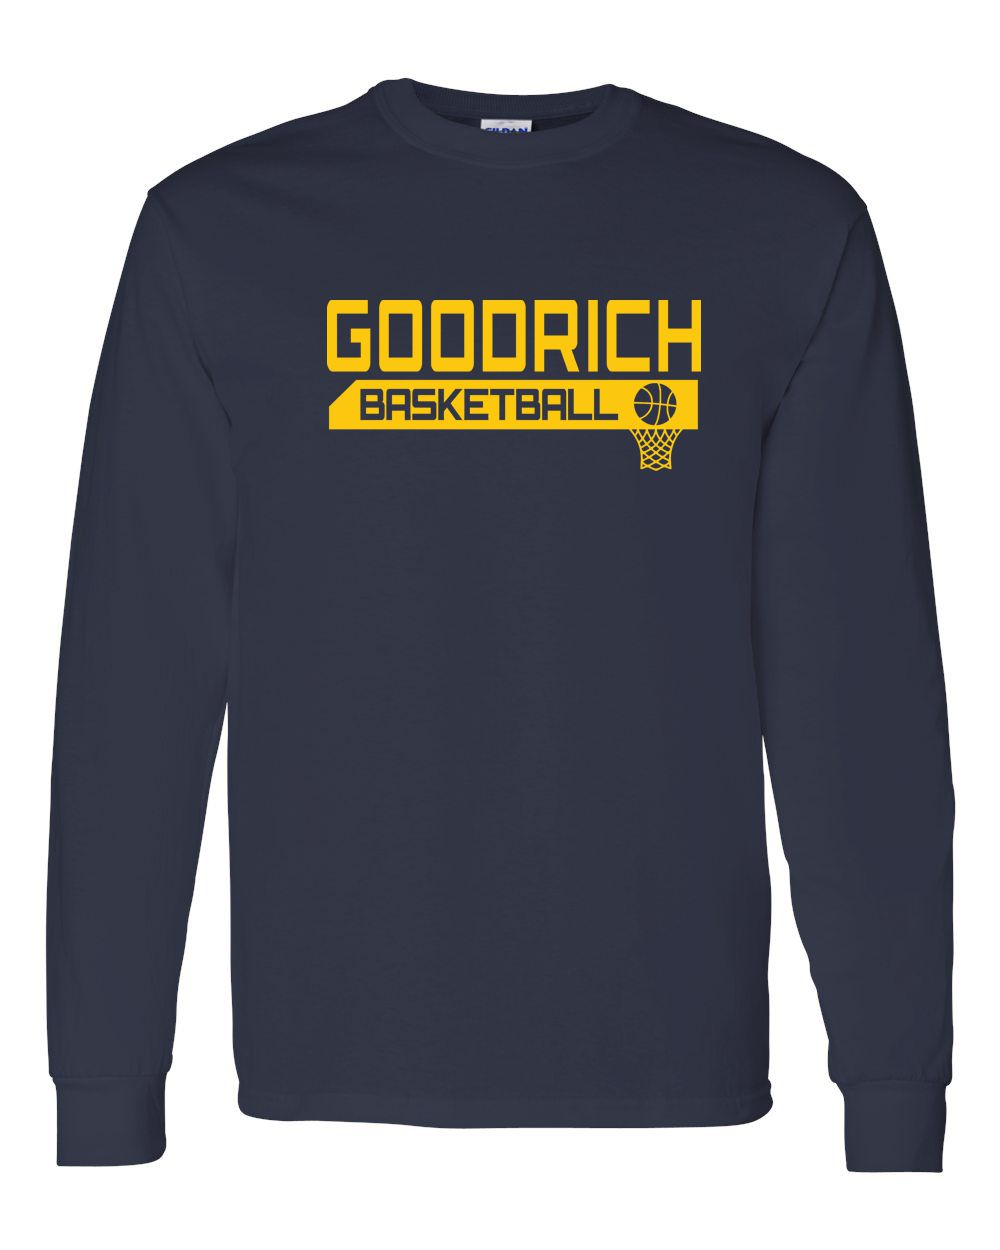 Goodrich Basketball Long Sleeve Shirt